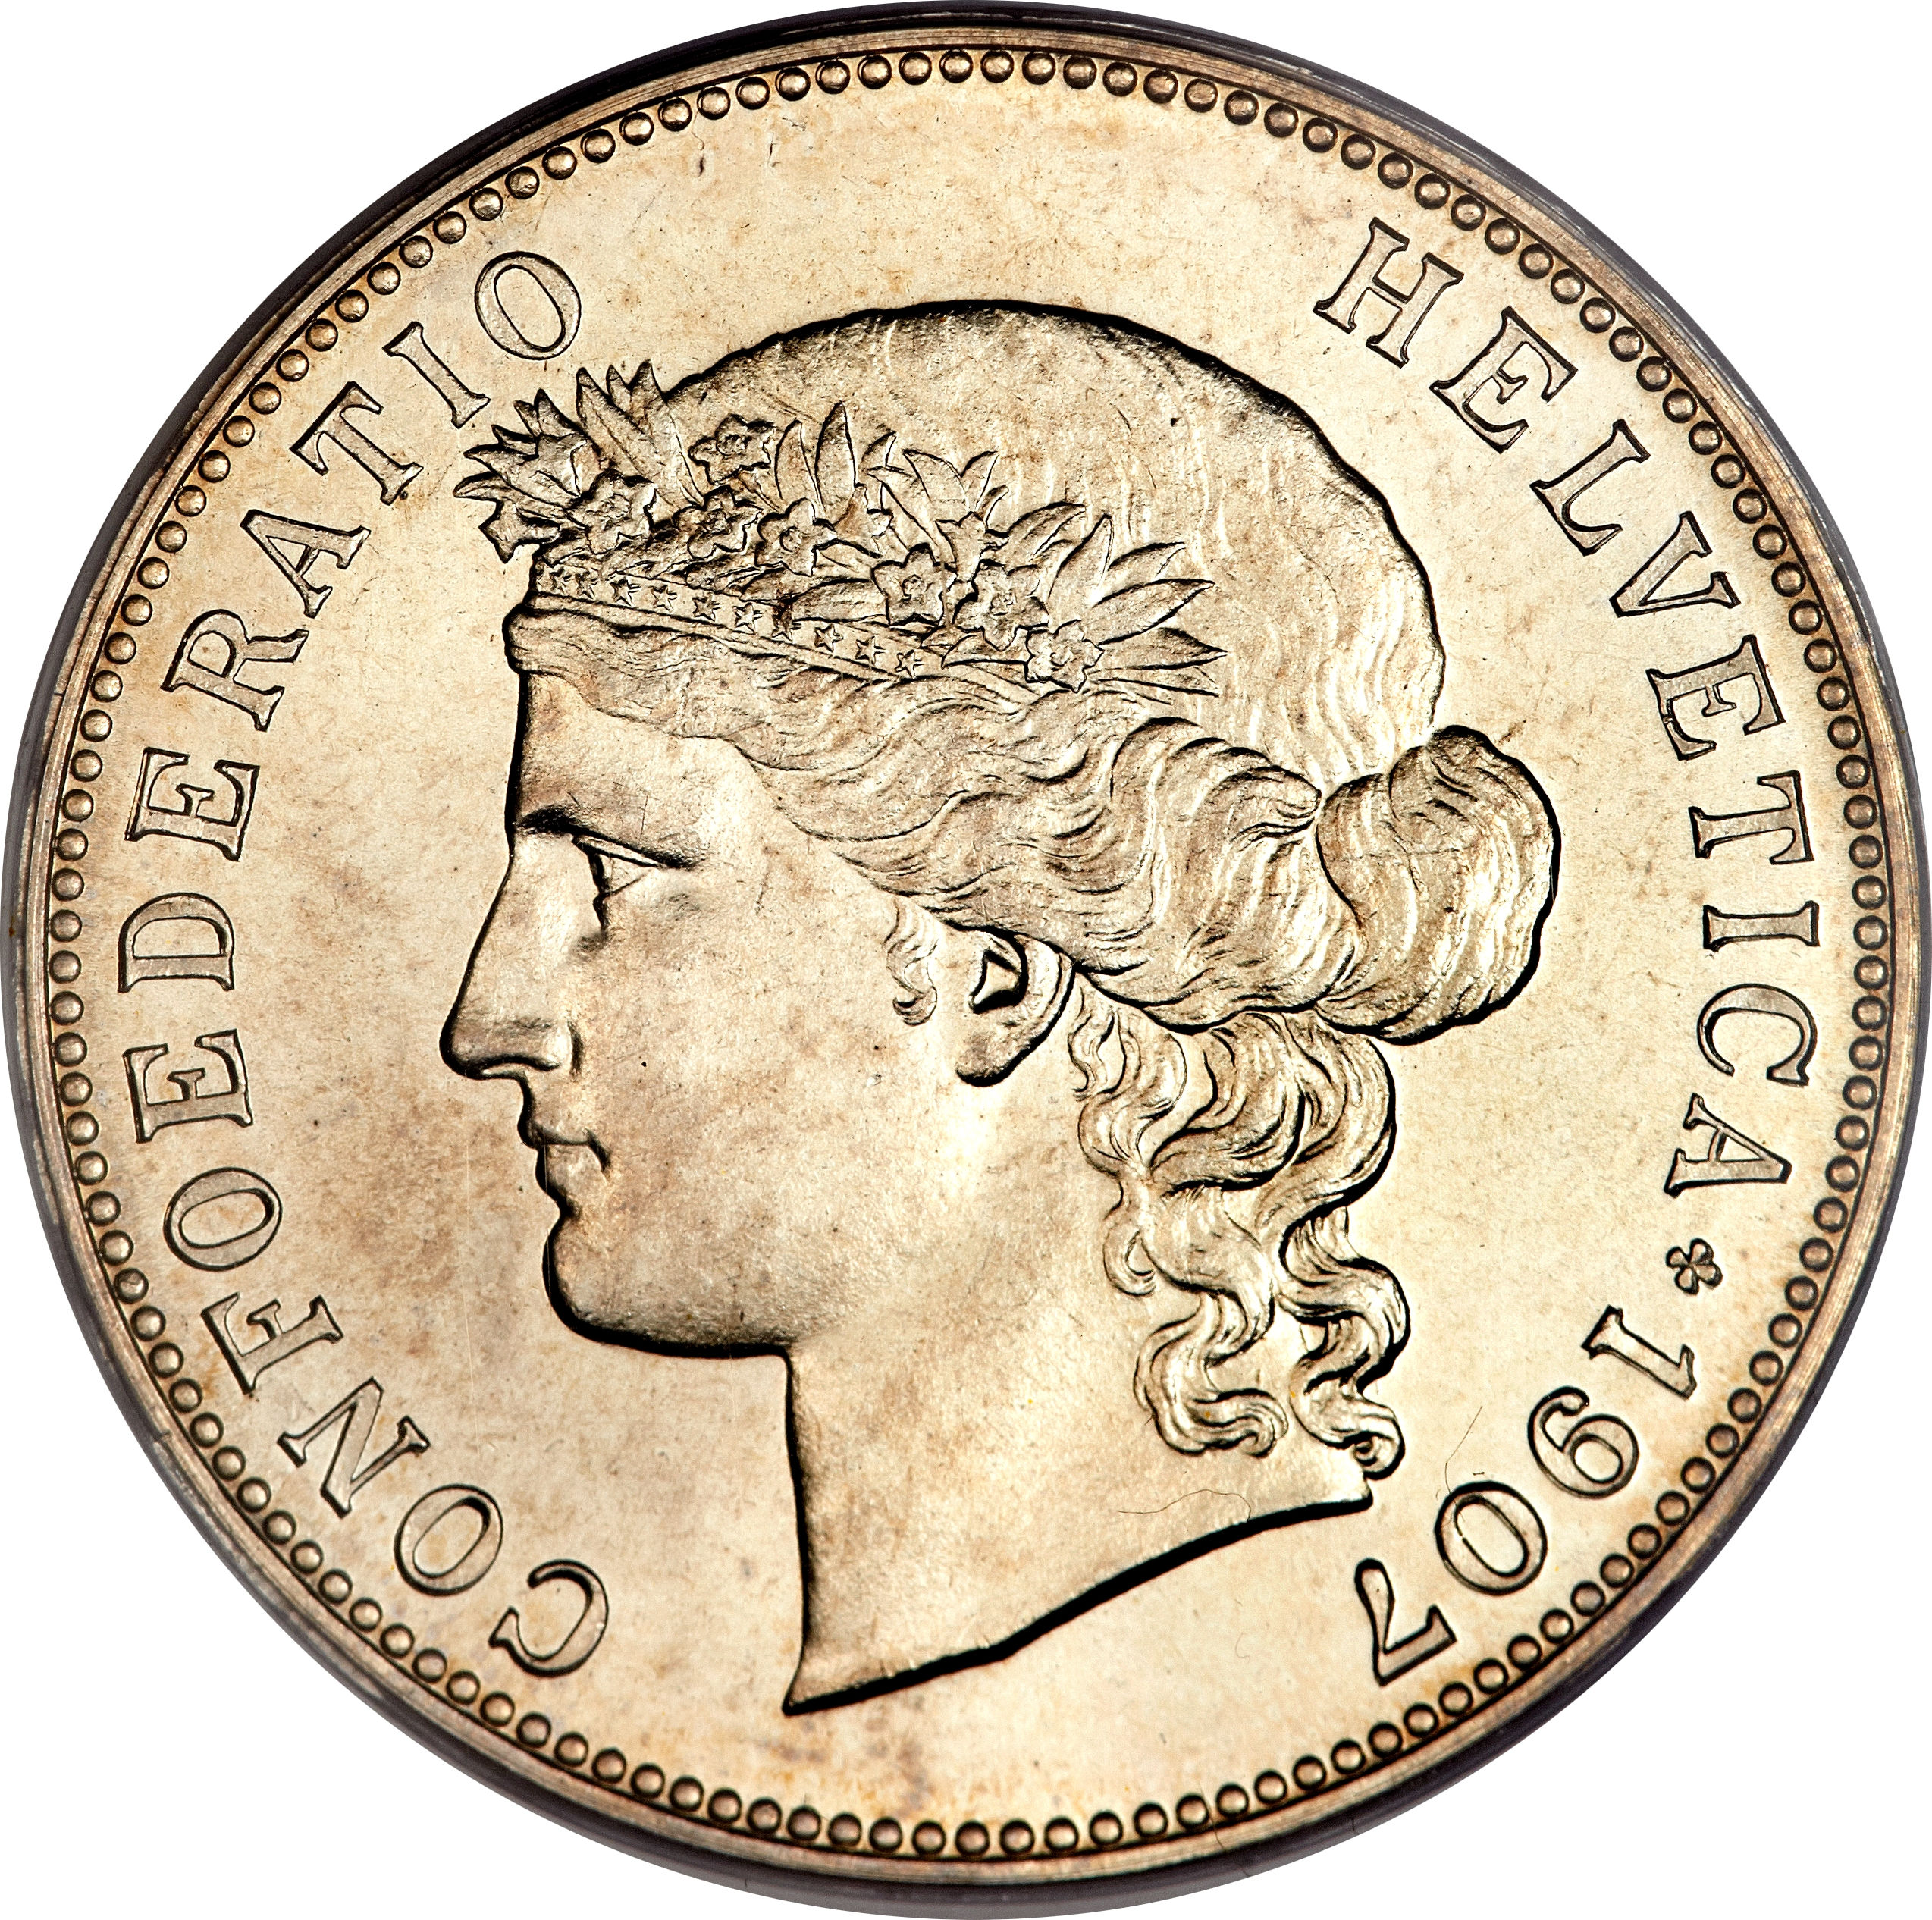 Confoederatio helvetica. Confoederatio helvetica монета 5. Helvetica Confederation монета. Confoederatio helvetica монета. Монета Швейцарии Confoederatio helvetica.